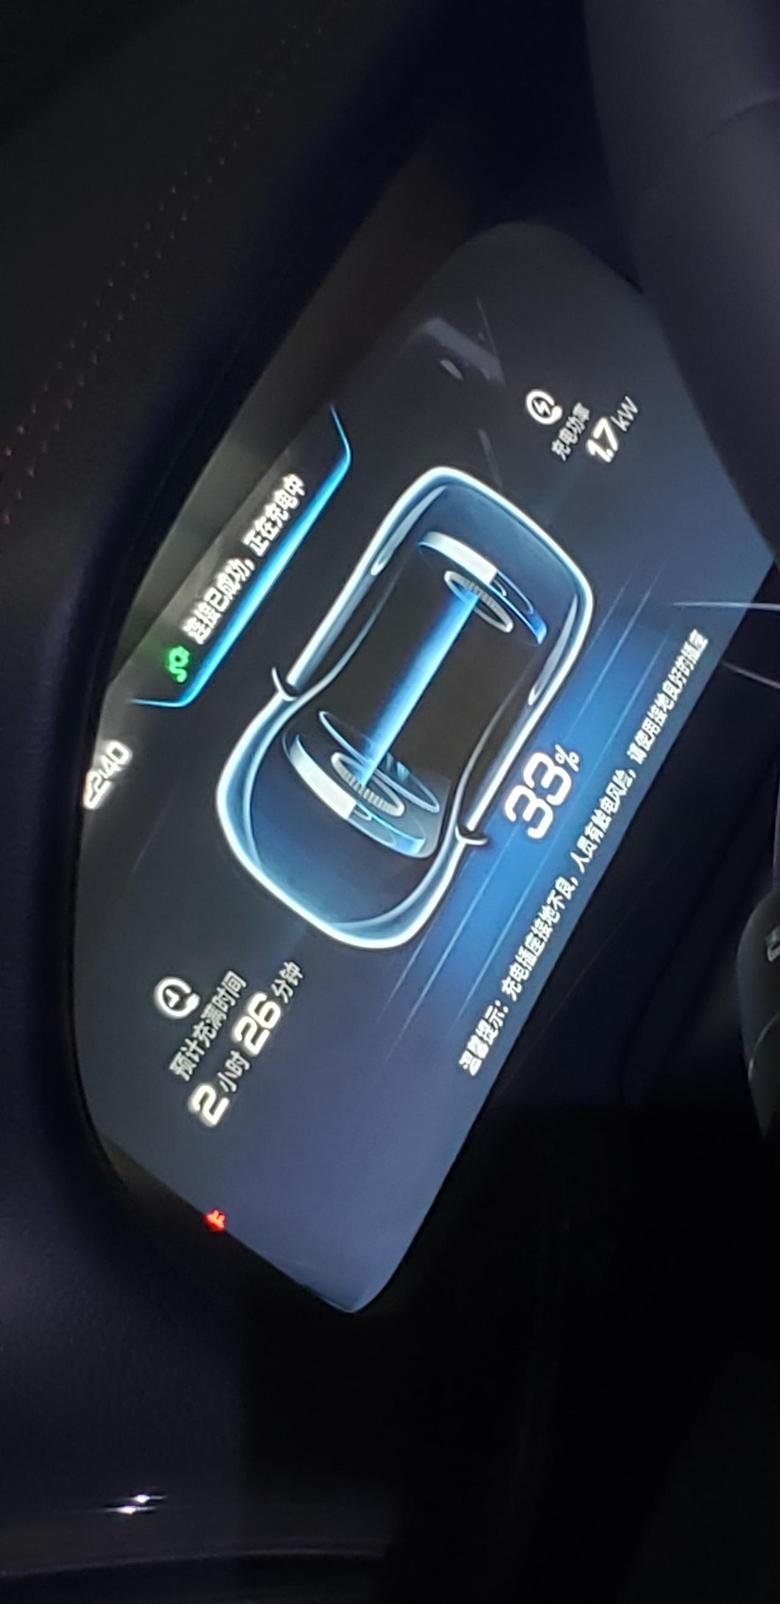 唐dm 刚提车1.7kw能冲这么快？2799混动空调插座充电的这电池会不会是假的？